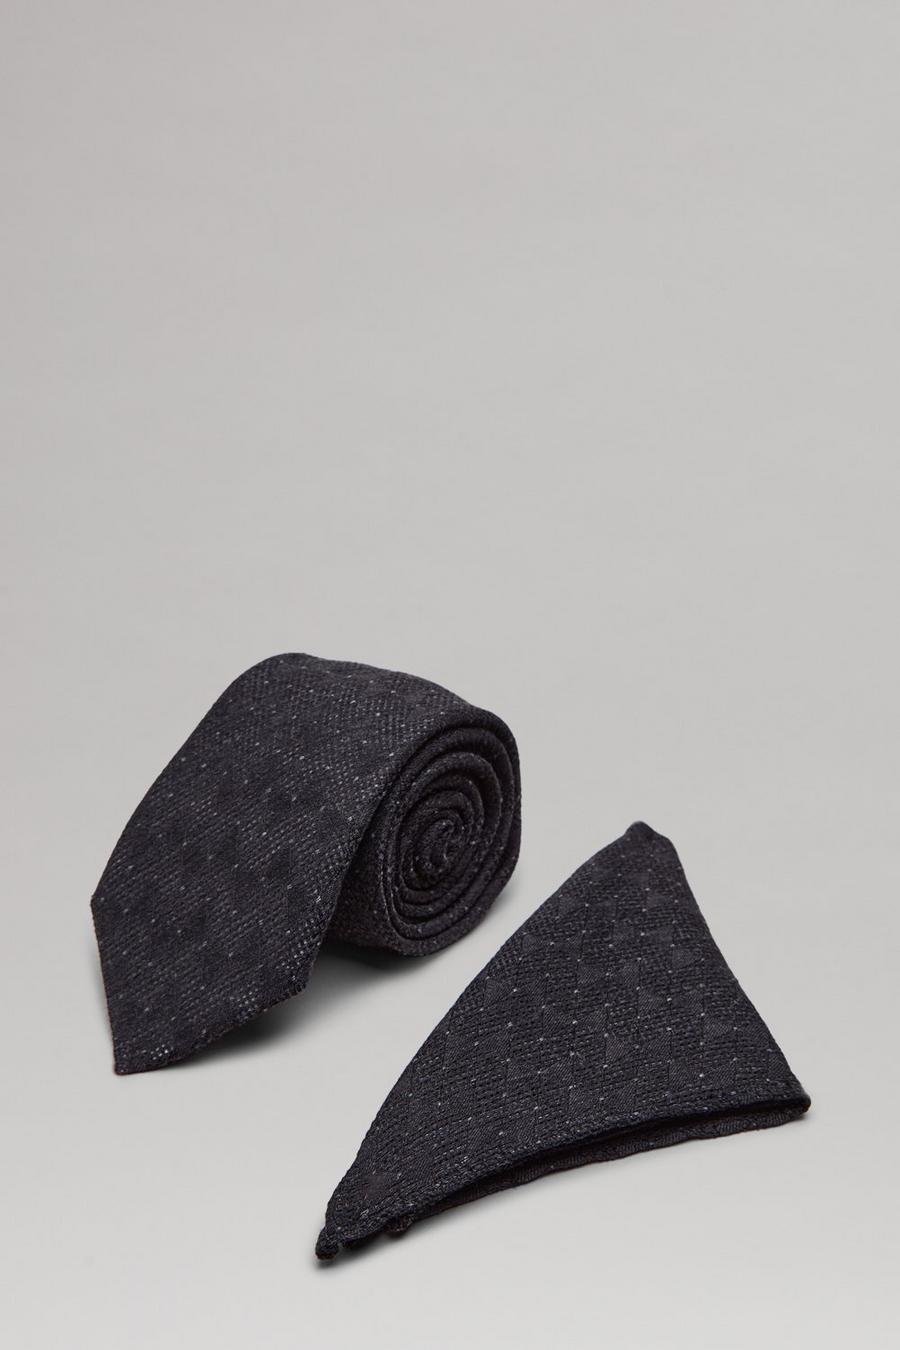 Black Patterned Wide Tie And Pocket Square Set